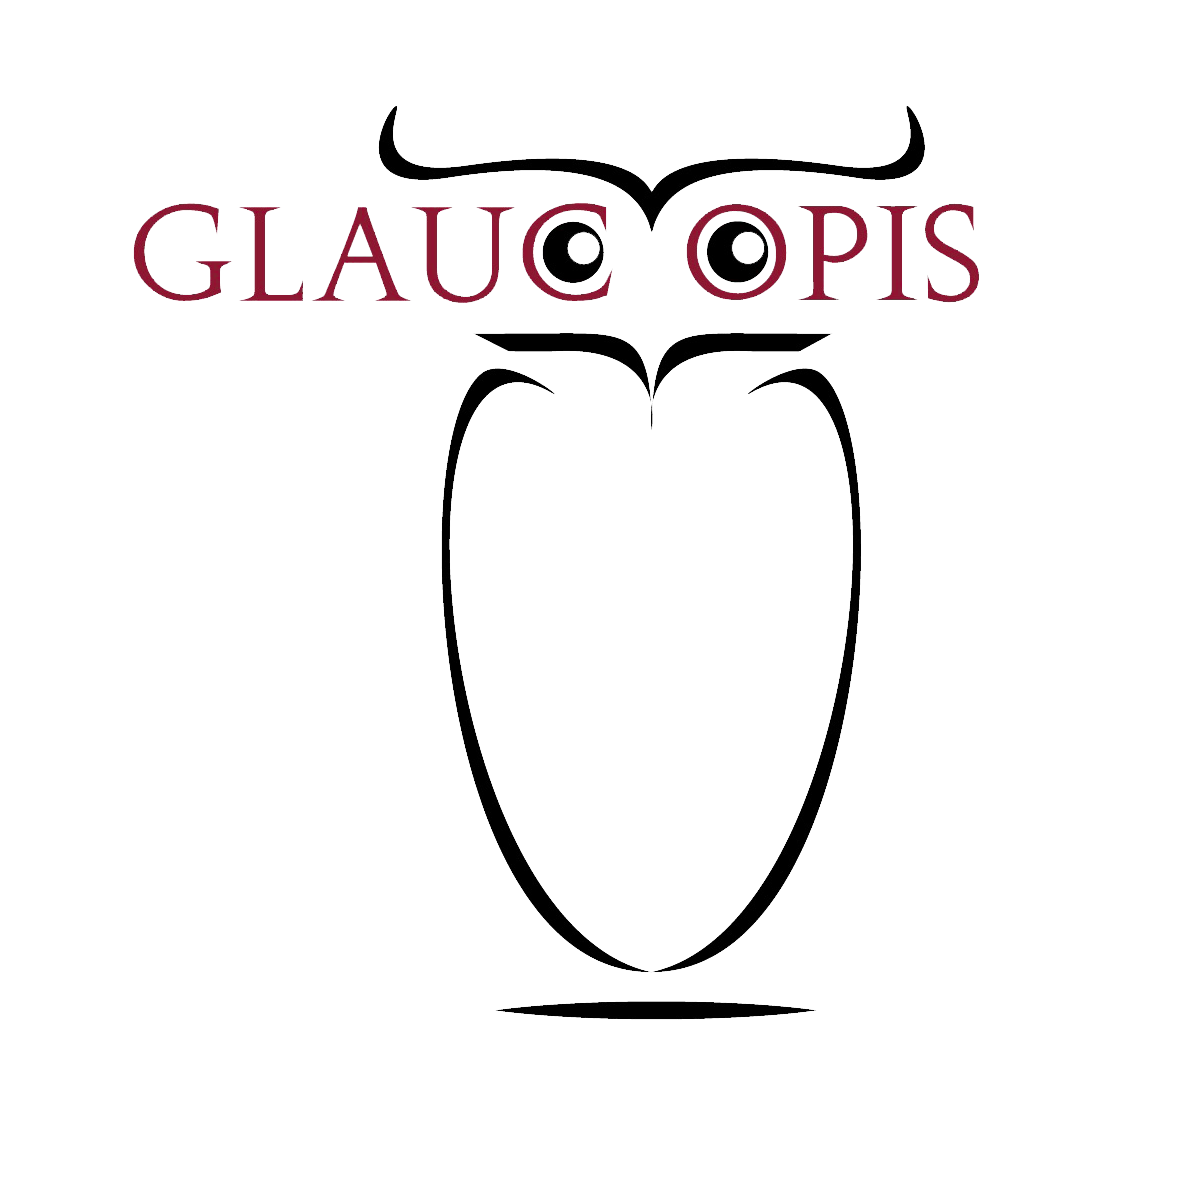 Glaucopis